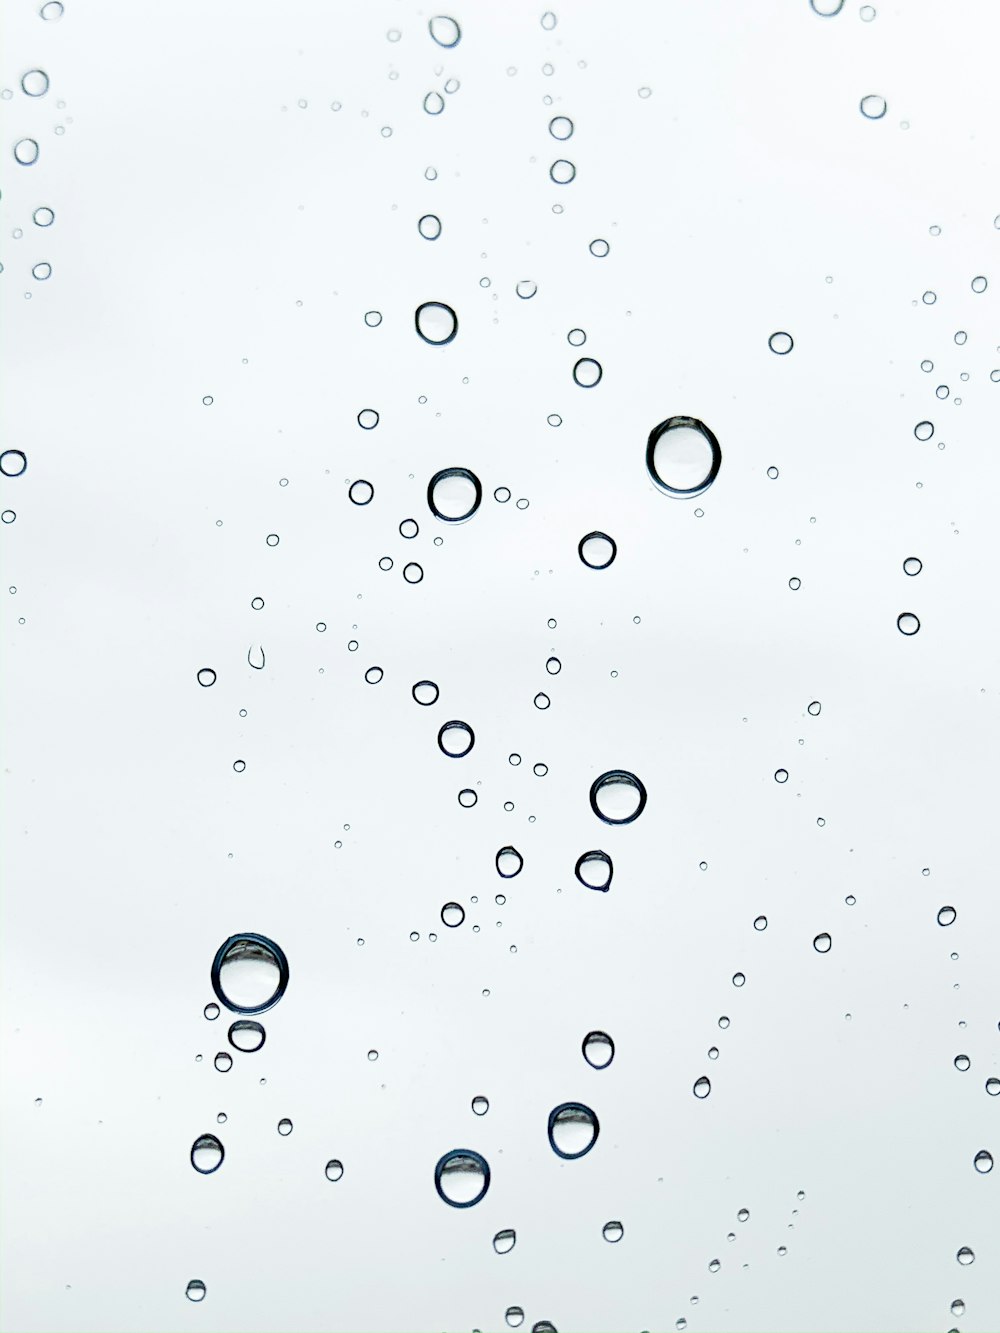 Imágenes de Burbujas De Aire | Descarga imágenes gratuitas en Unsplash